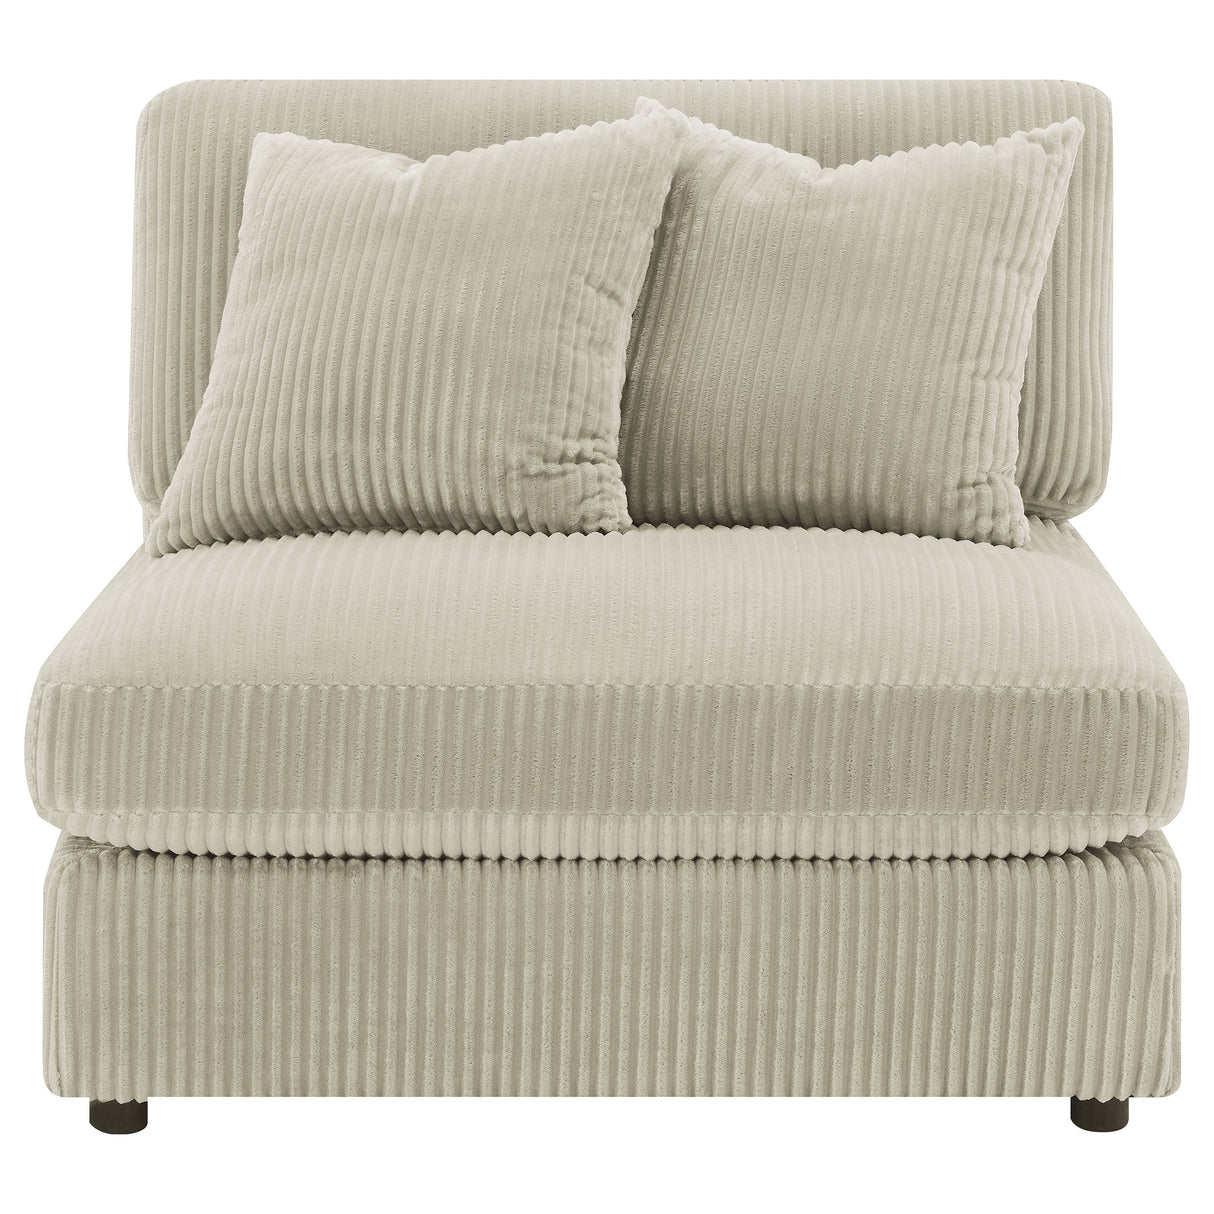 Armless Chair - Blaine Upholstered Armless Chair Sand